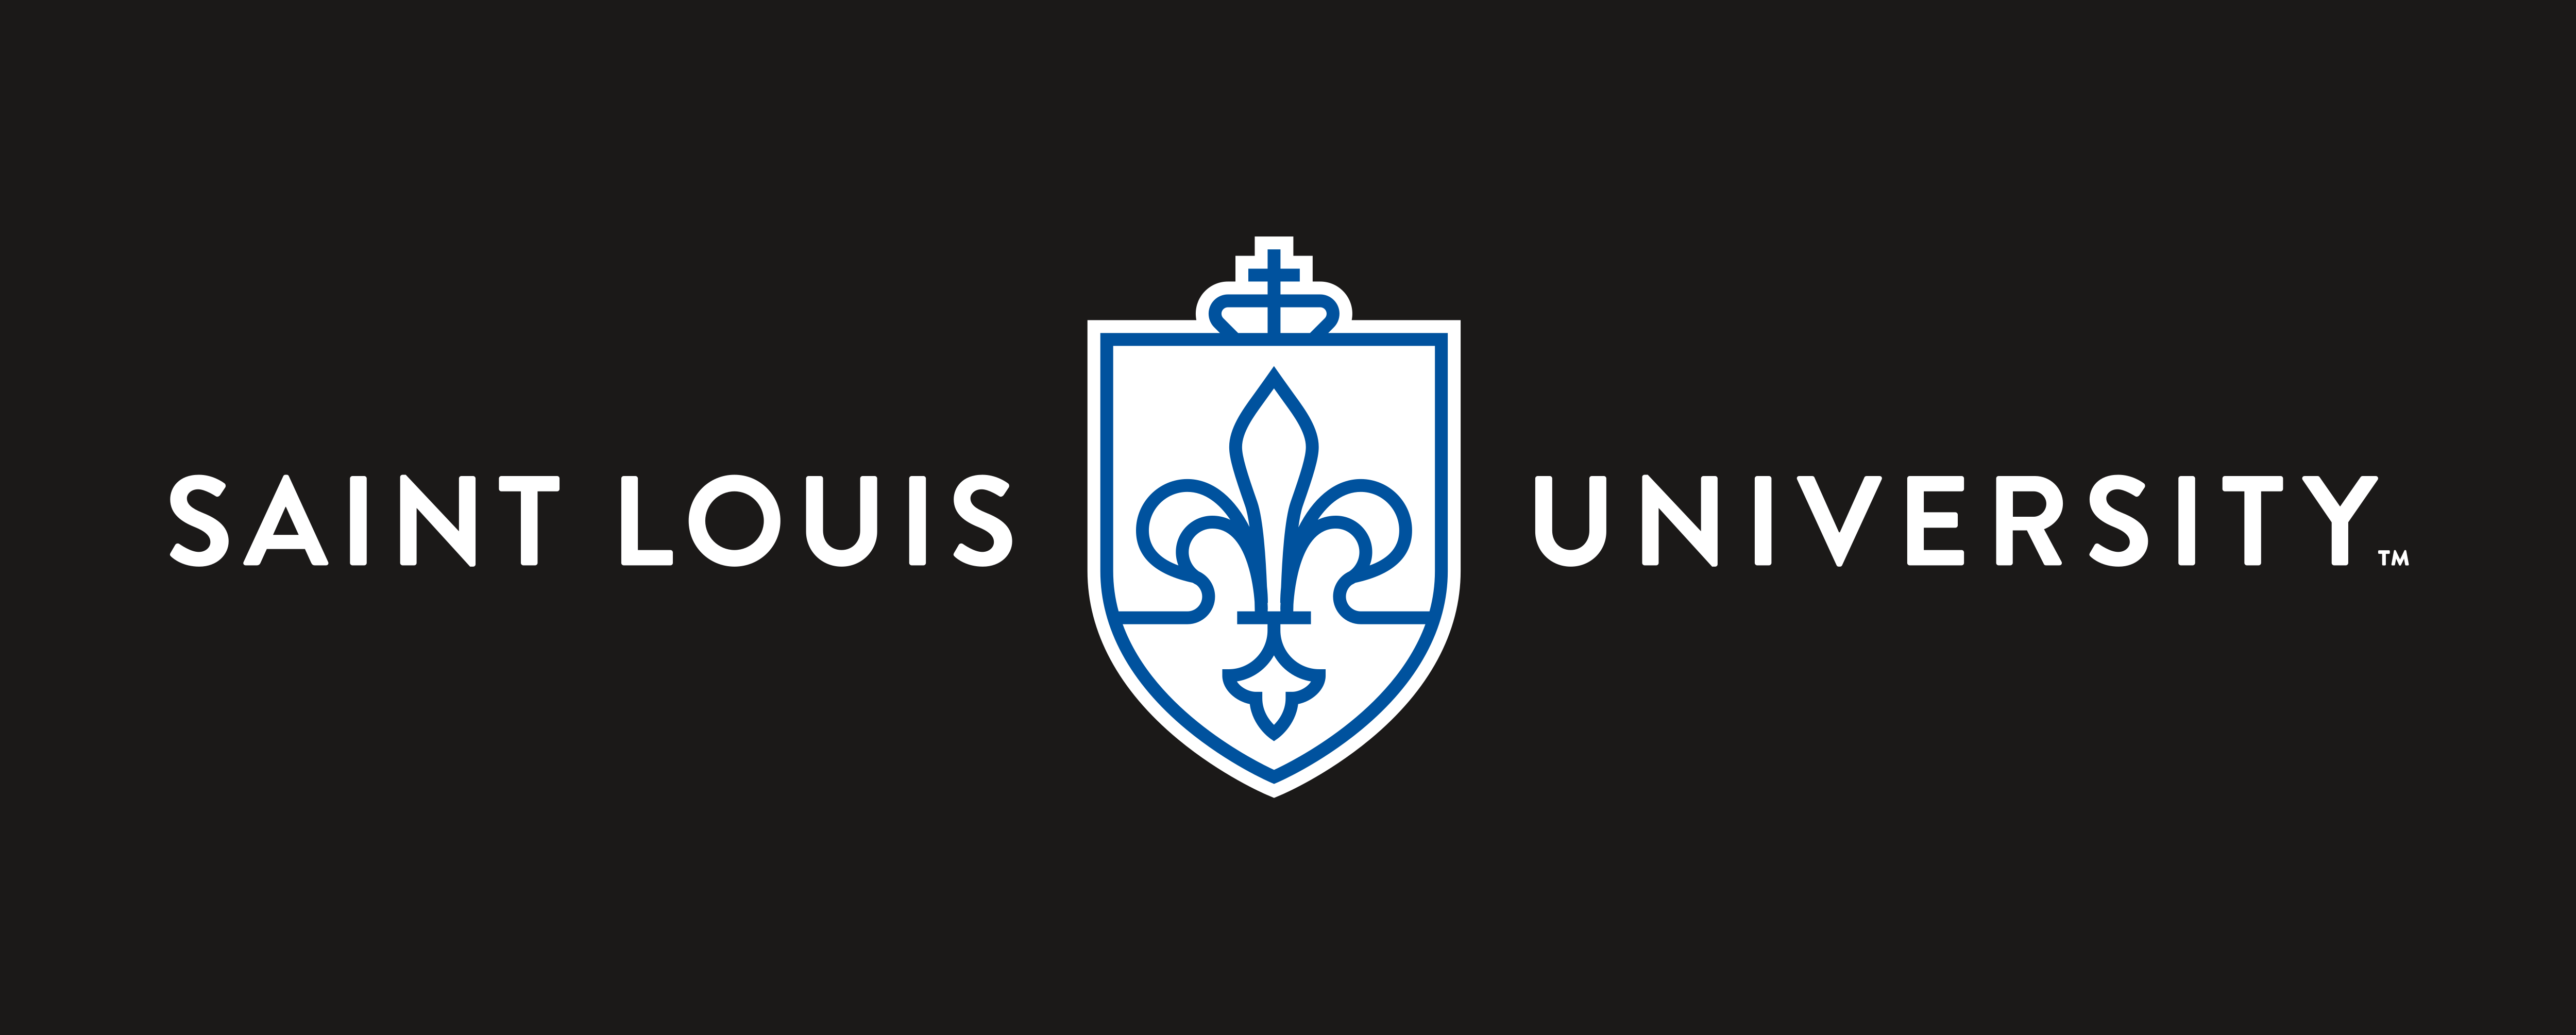 Saint Louis University – Logos Download